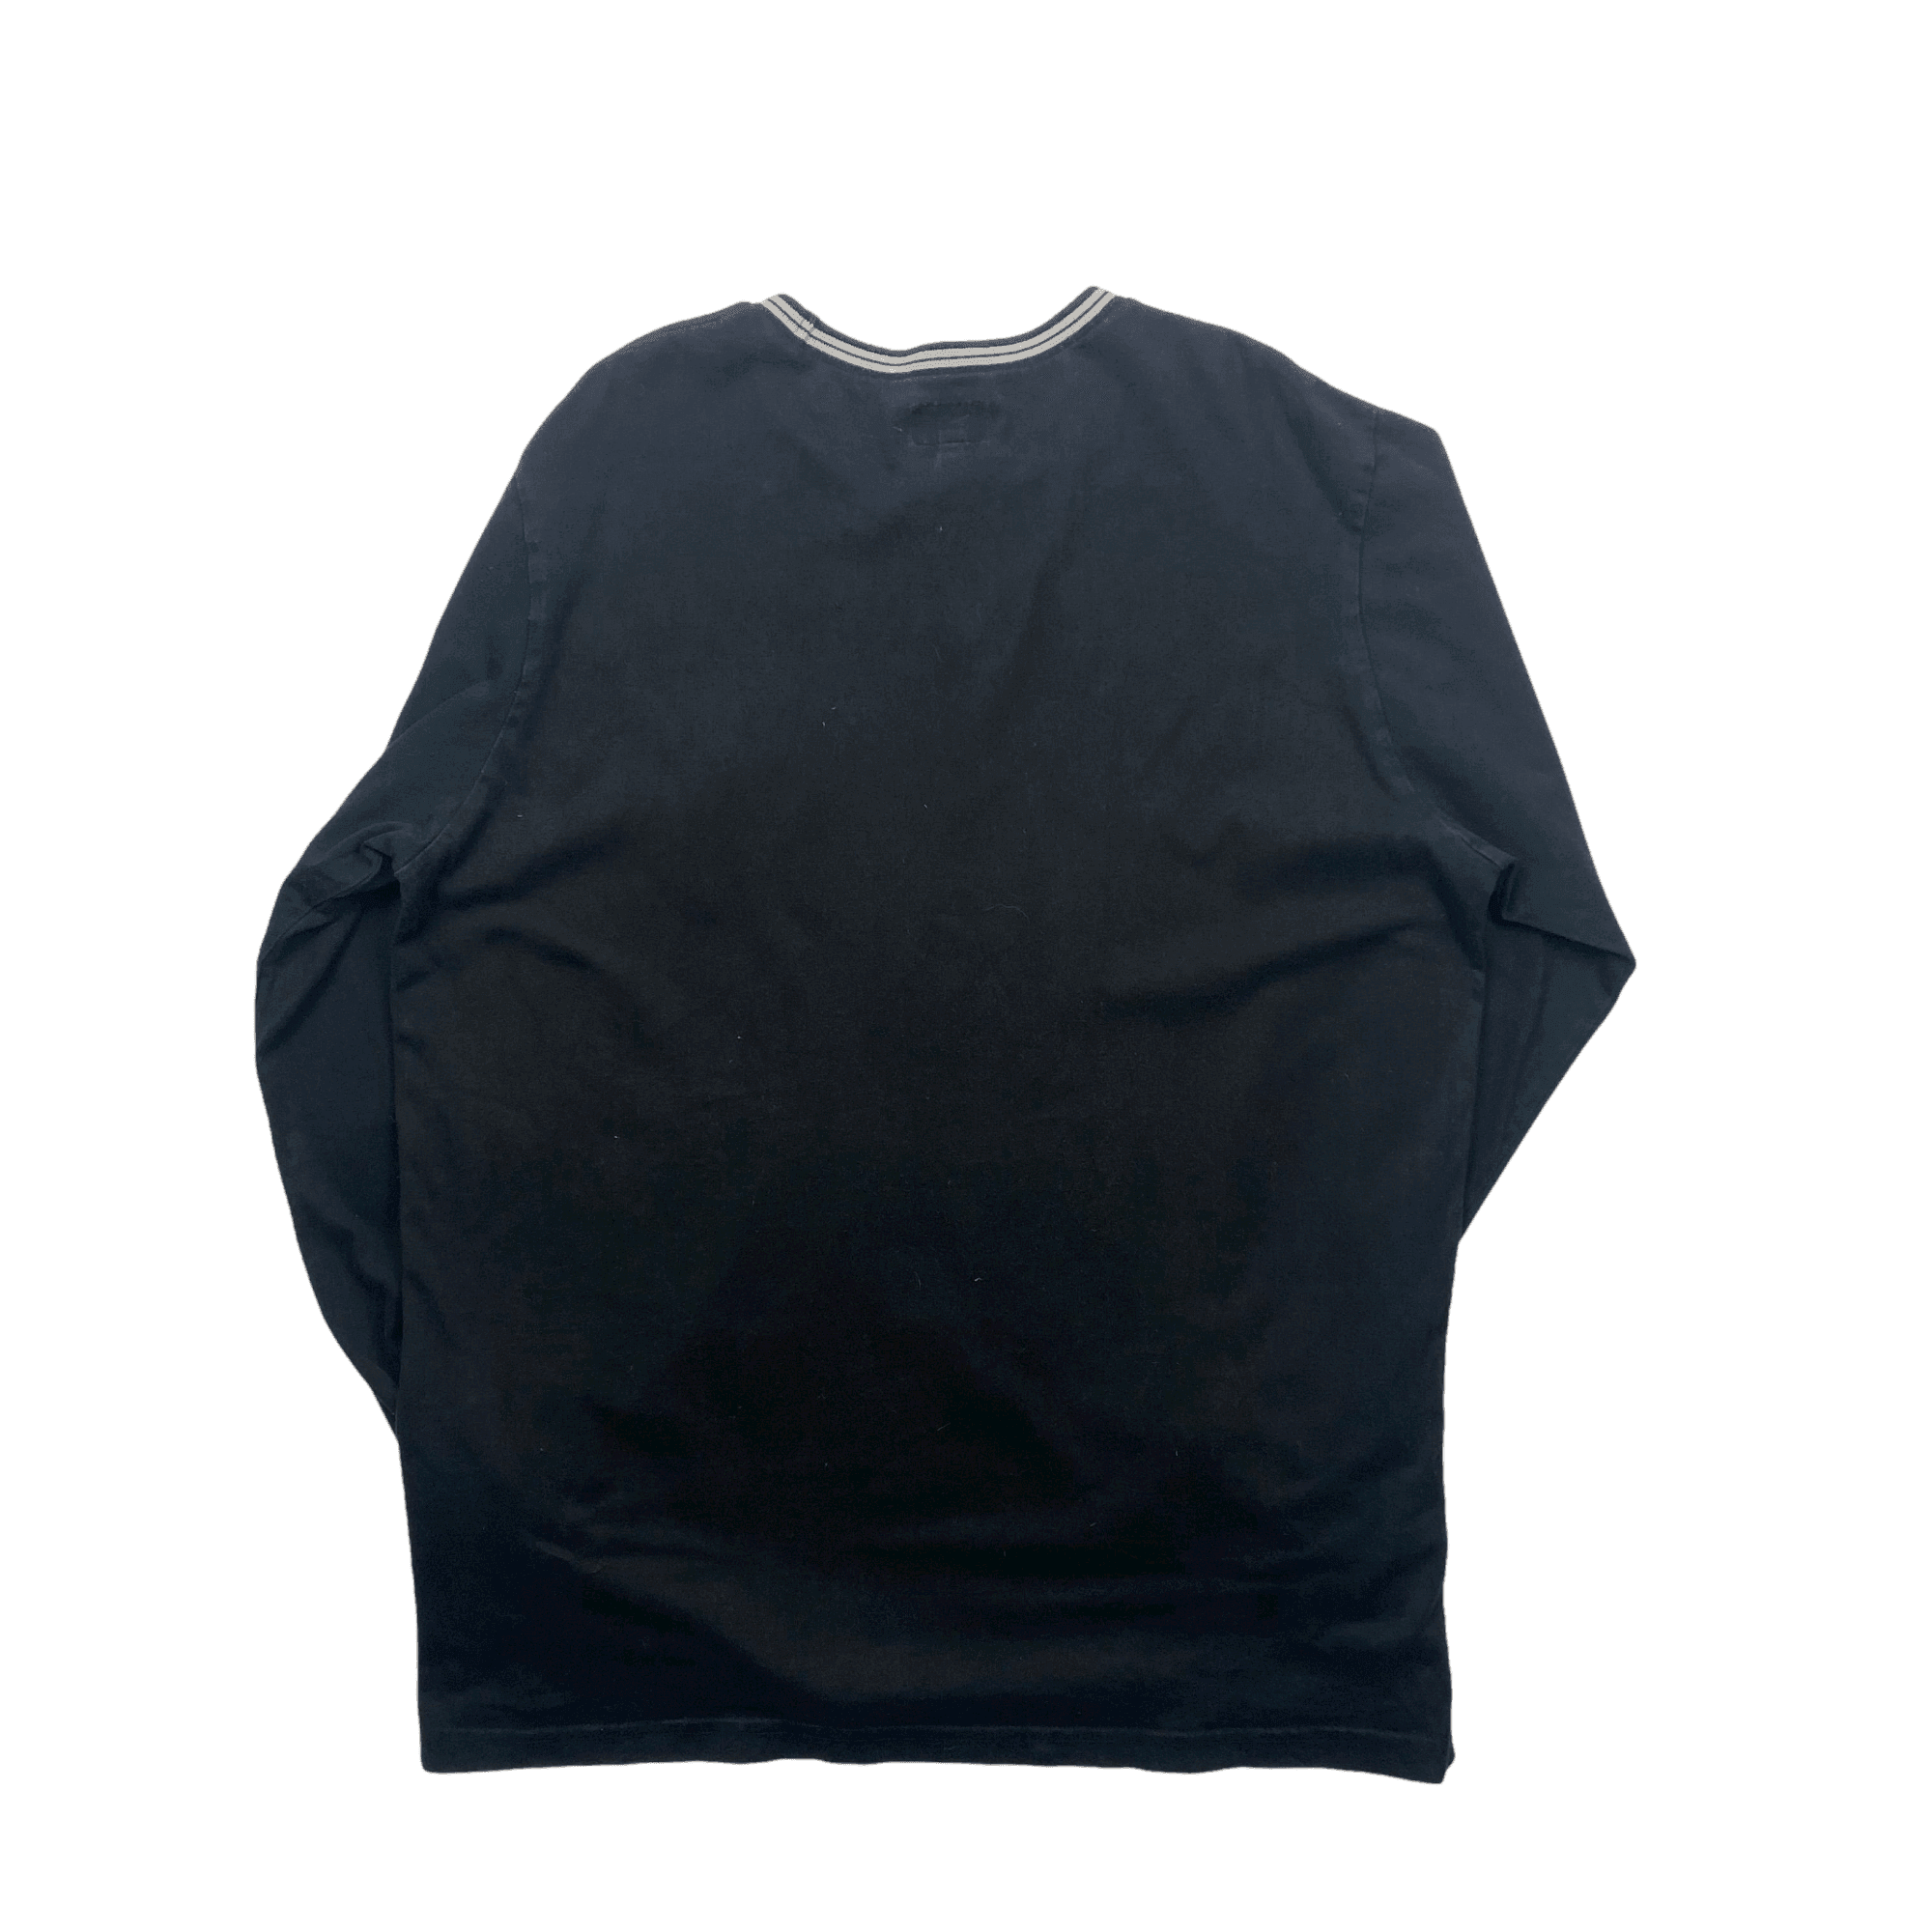 【超歓迎即納】Supreme Pillows Tee Black XLarge Tシャツ/カットソー(半袖/袖なし)